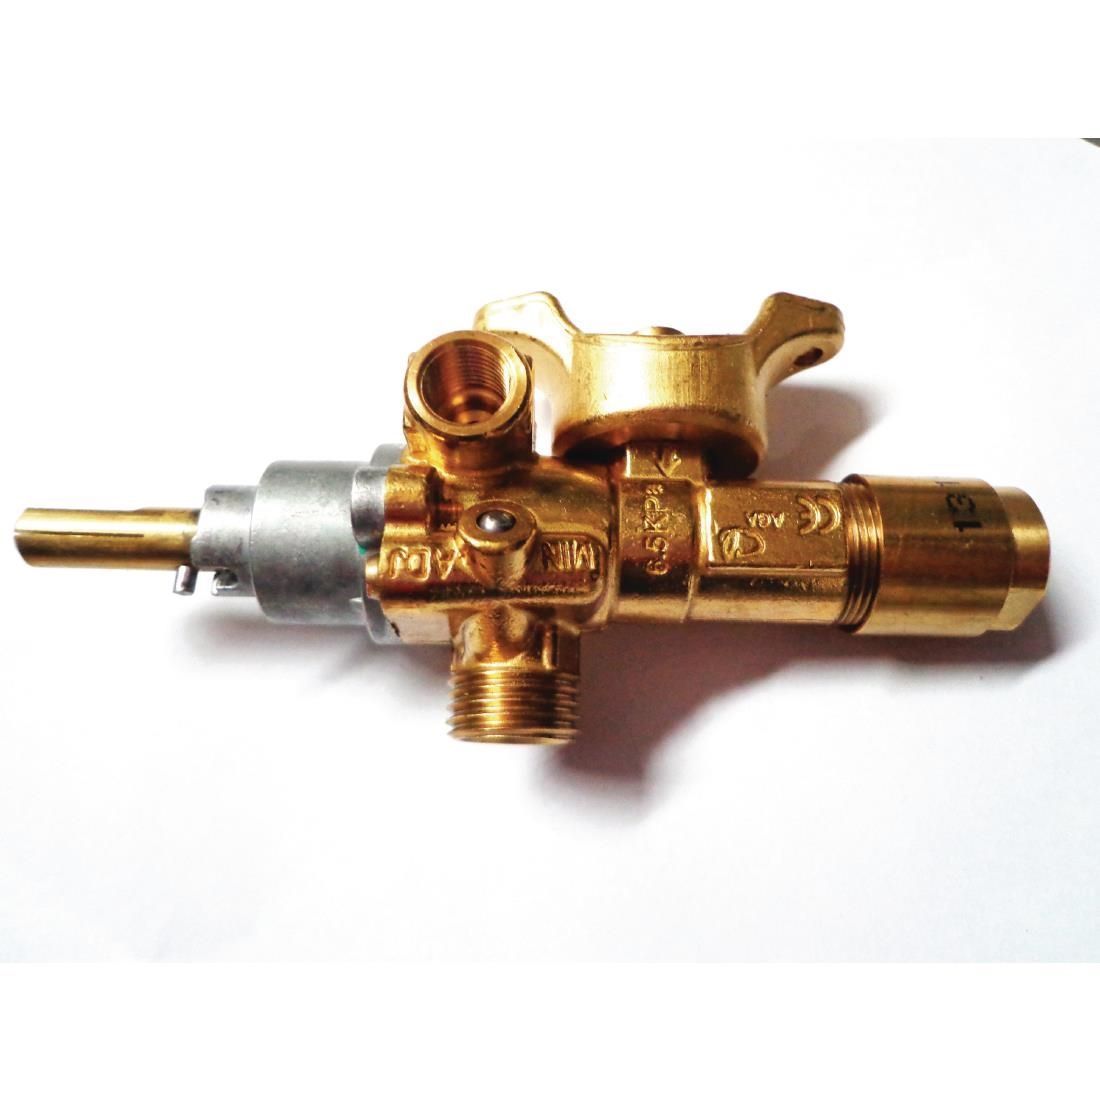 AF271 Thor Safety valve